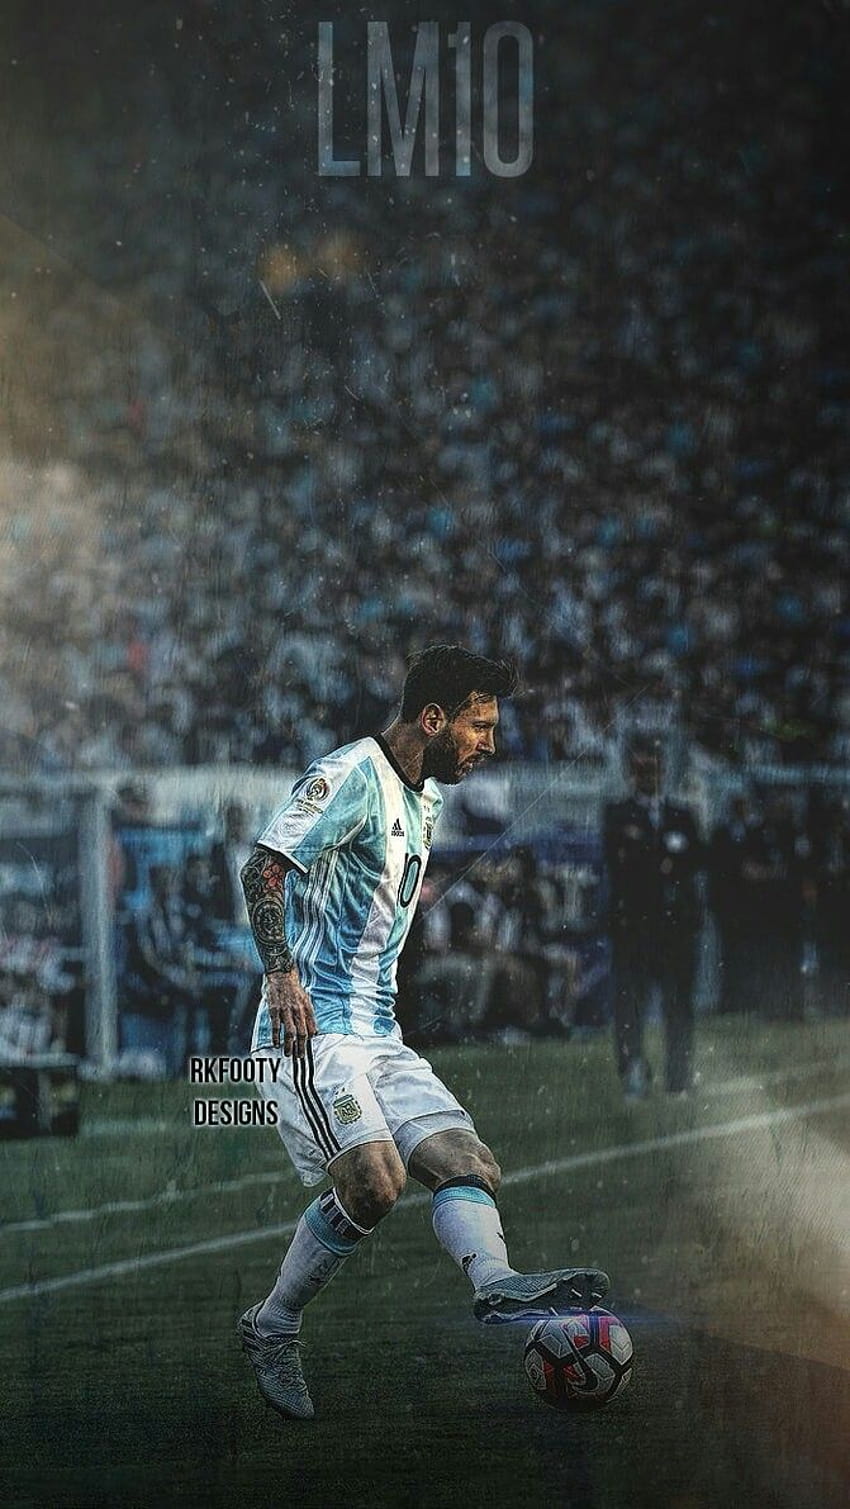 Cảm nhận sự hùng vĩ của vua sân cỏ Lionel Messi qua bức hình nền điện thoại Argentina Phone Wallpaper, để những cảm xúc và đam mê vẫn luôn ở bên bạn ở mọi nơi.